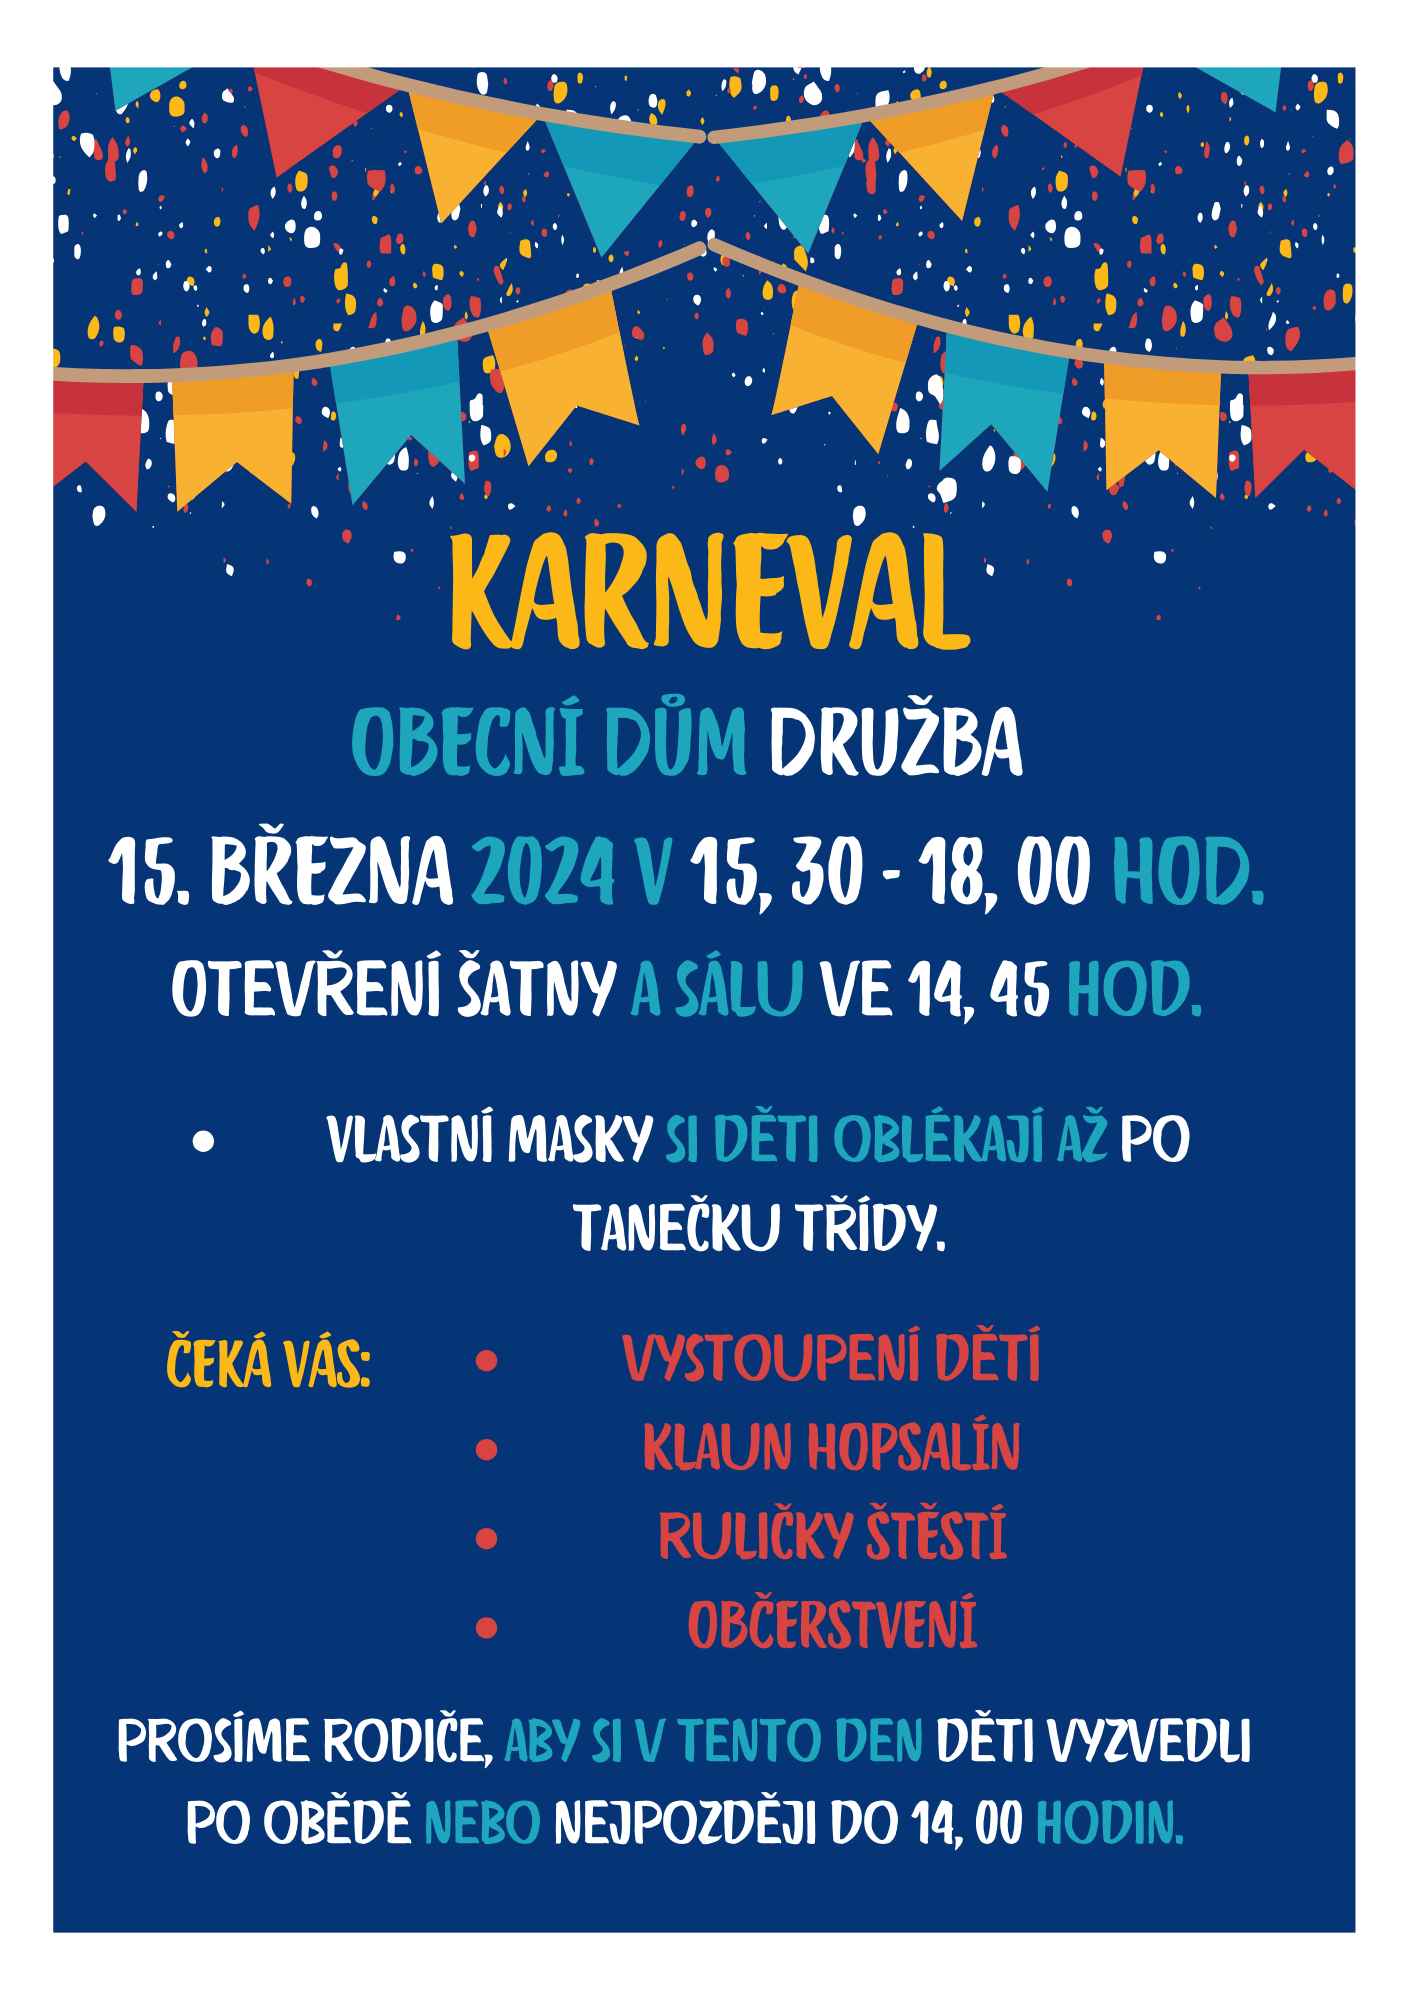 karneval1.png (440 KB)